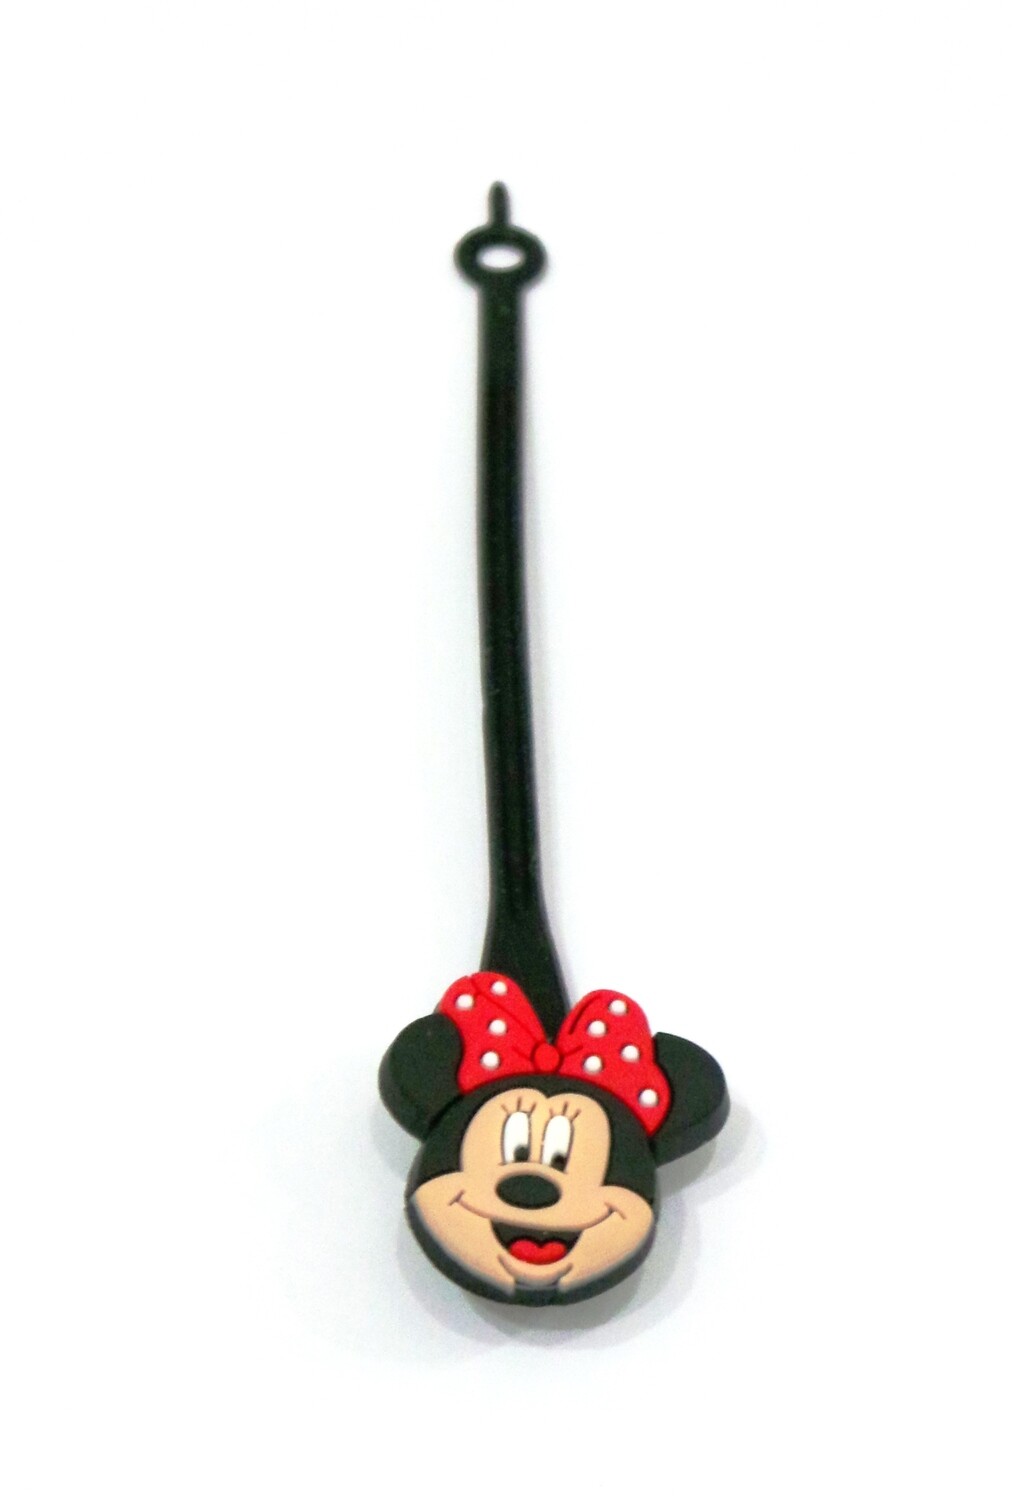 Mickey2 Zipper Pulls